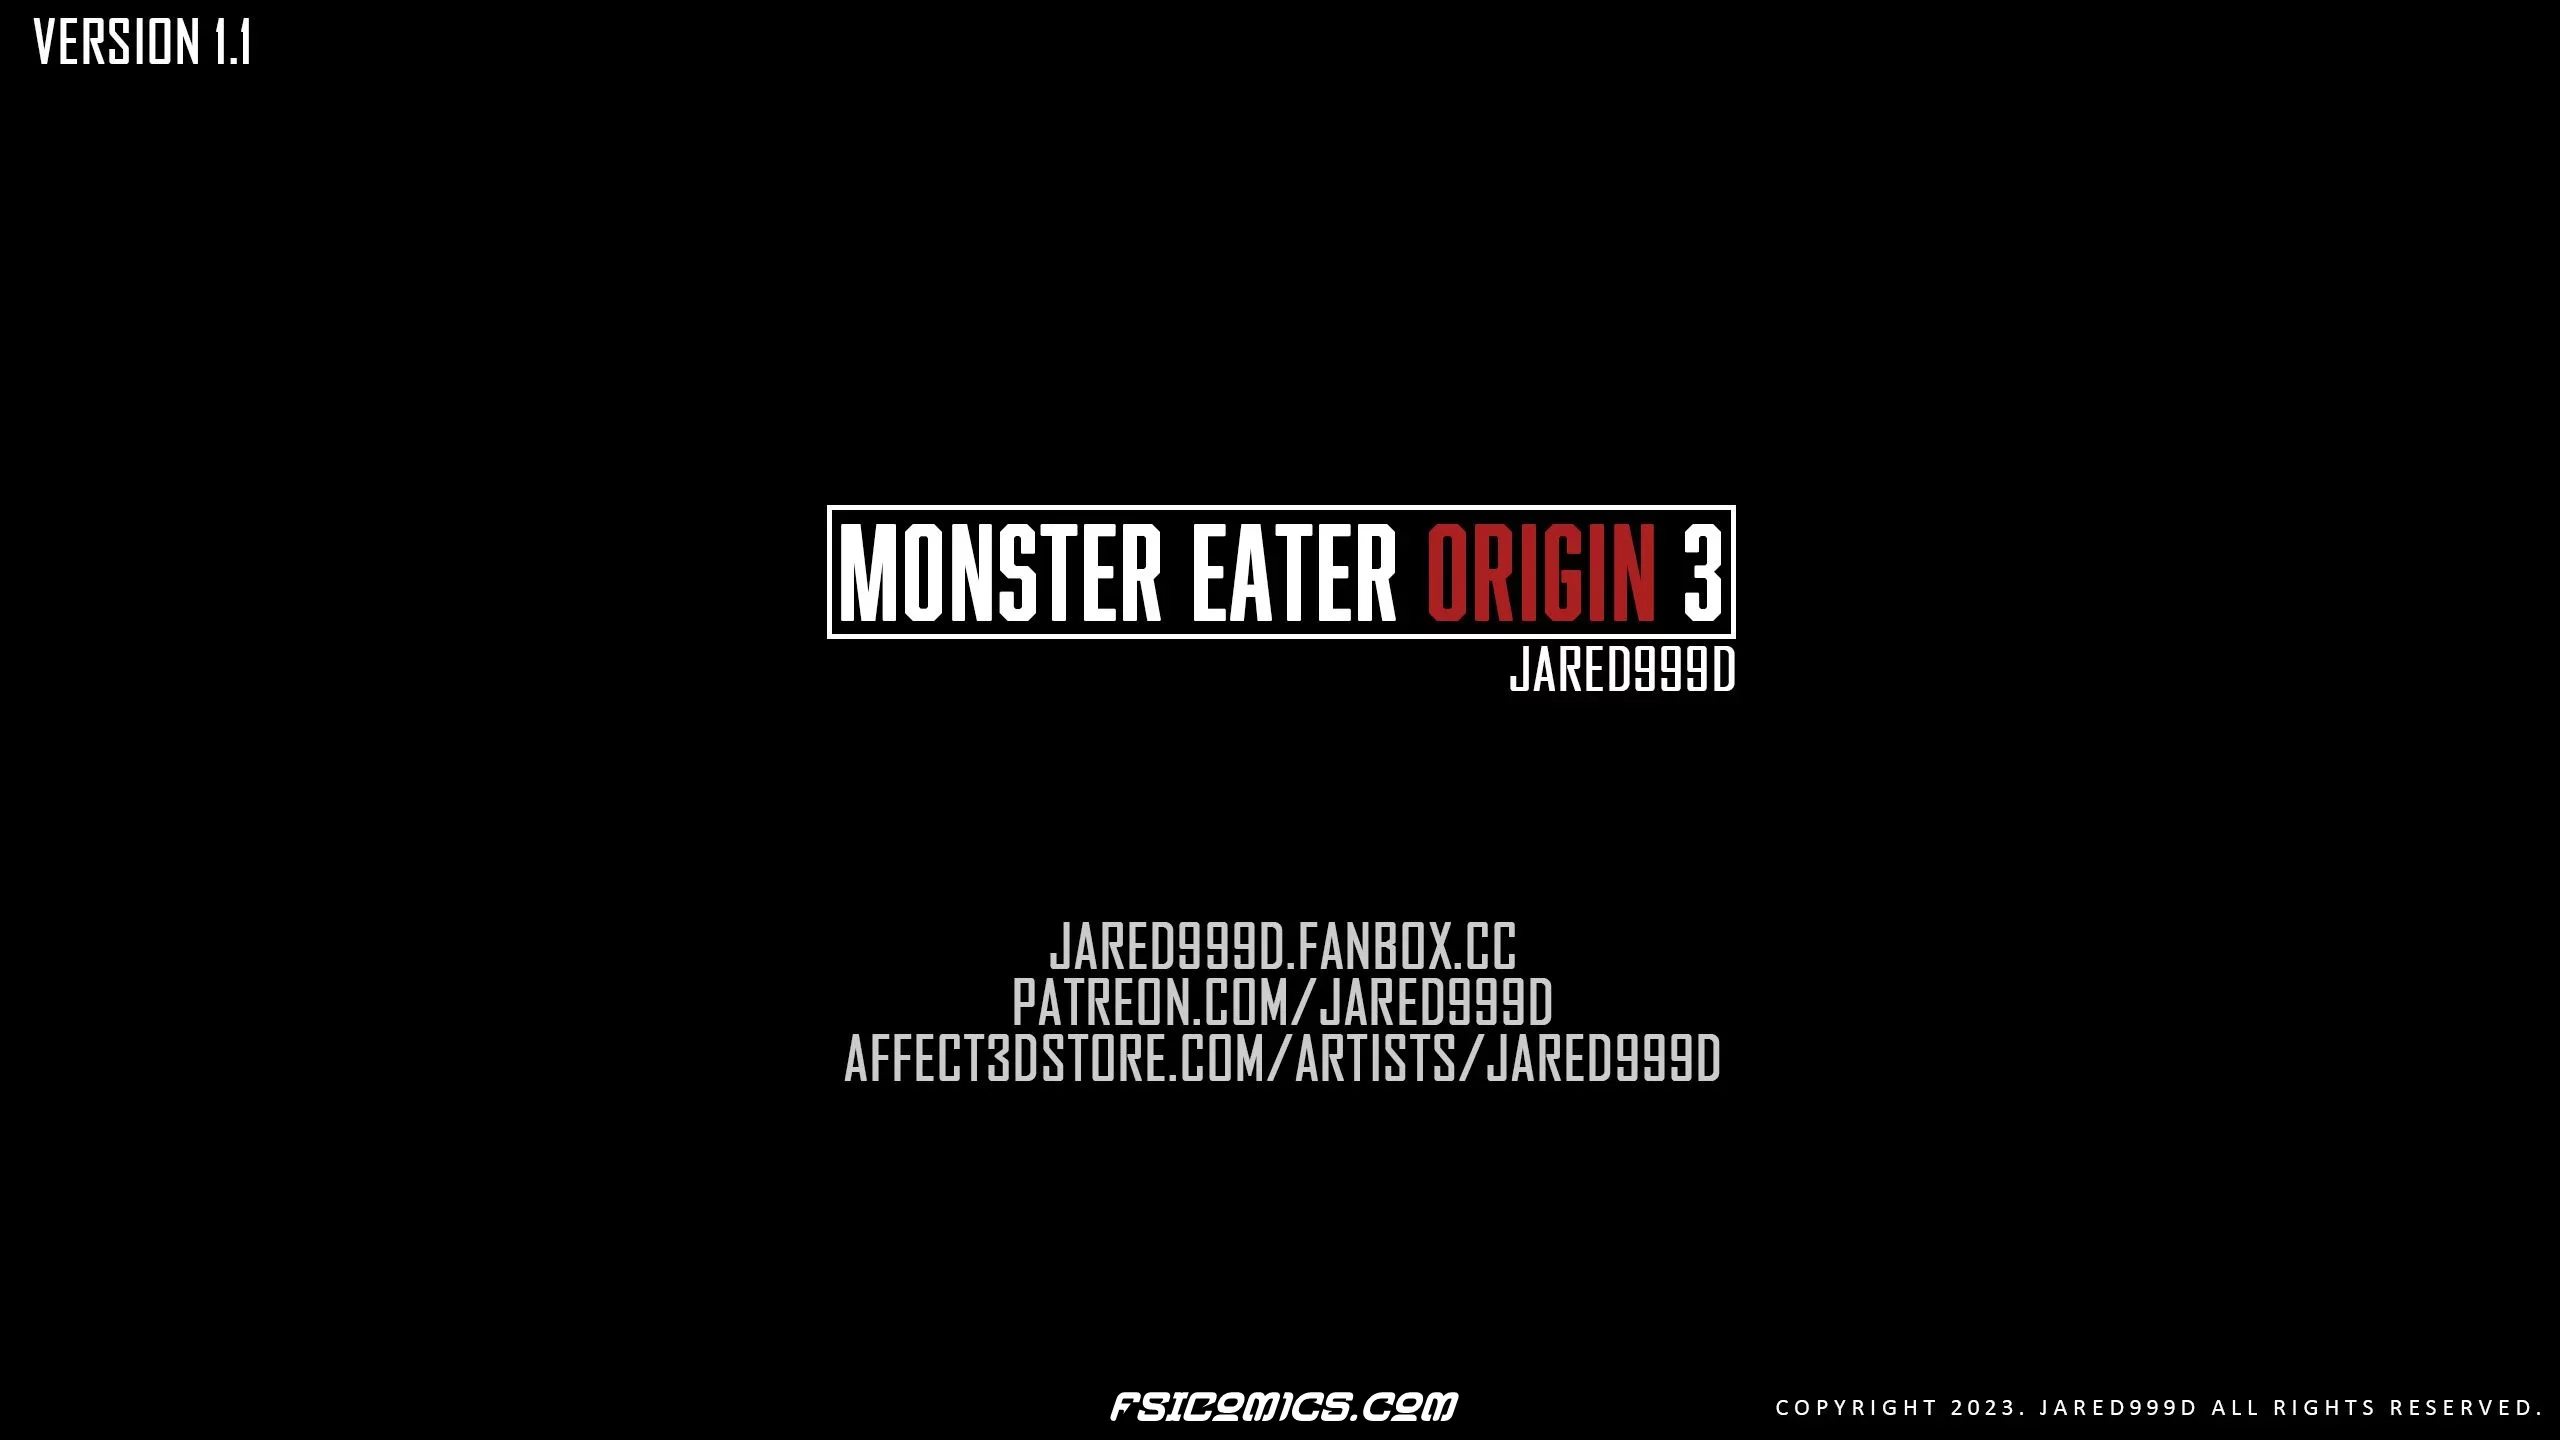 Monster Eater Origins Chapter 3 - Jared999D - 35 - FSIComics